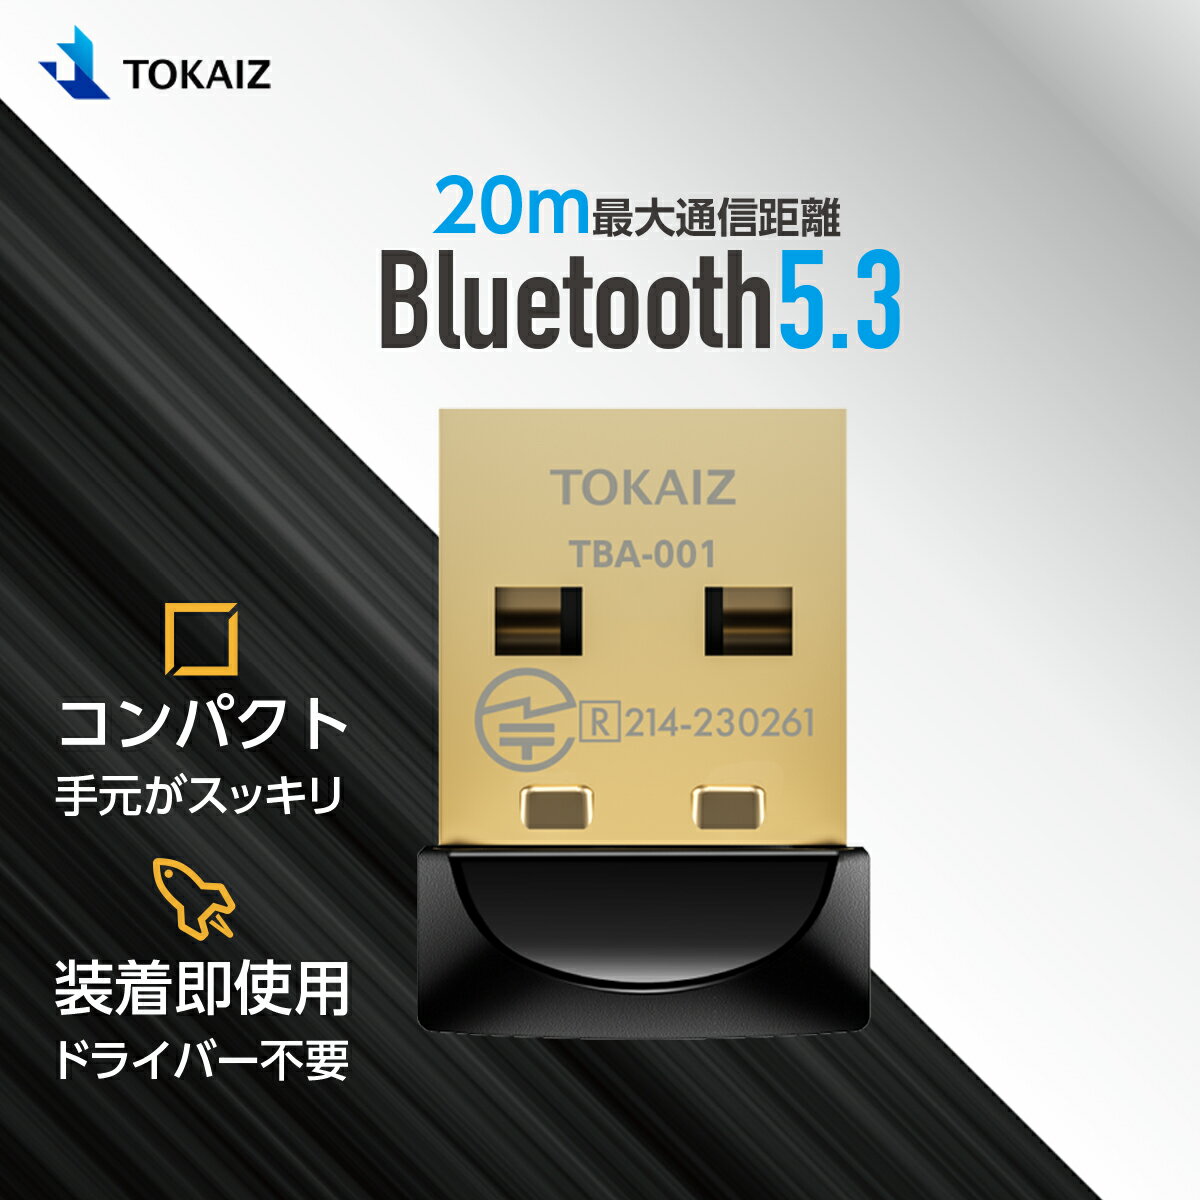 110円OFFクーポンあり! TOKAIZ Bluetooth 